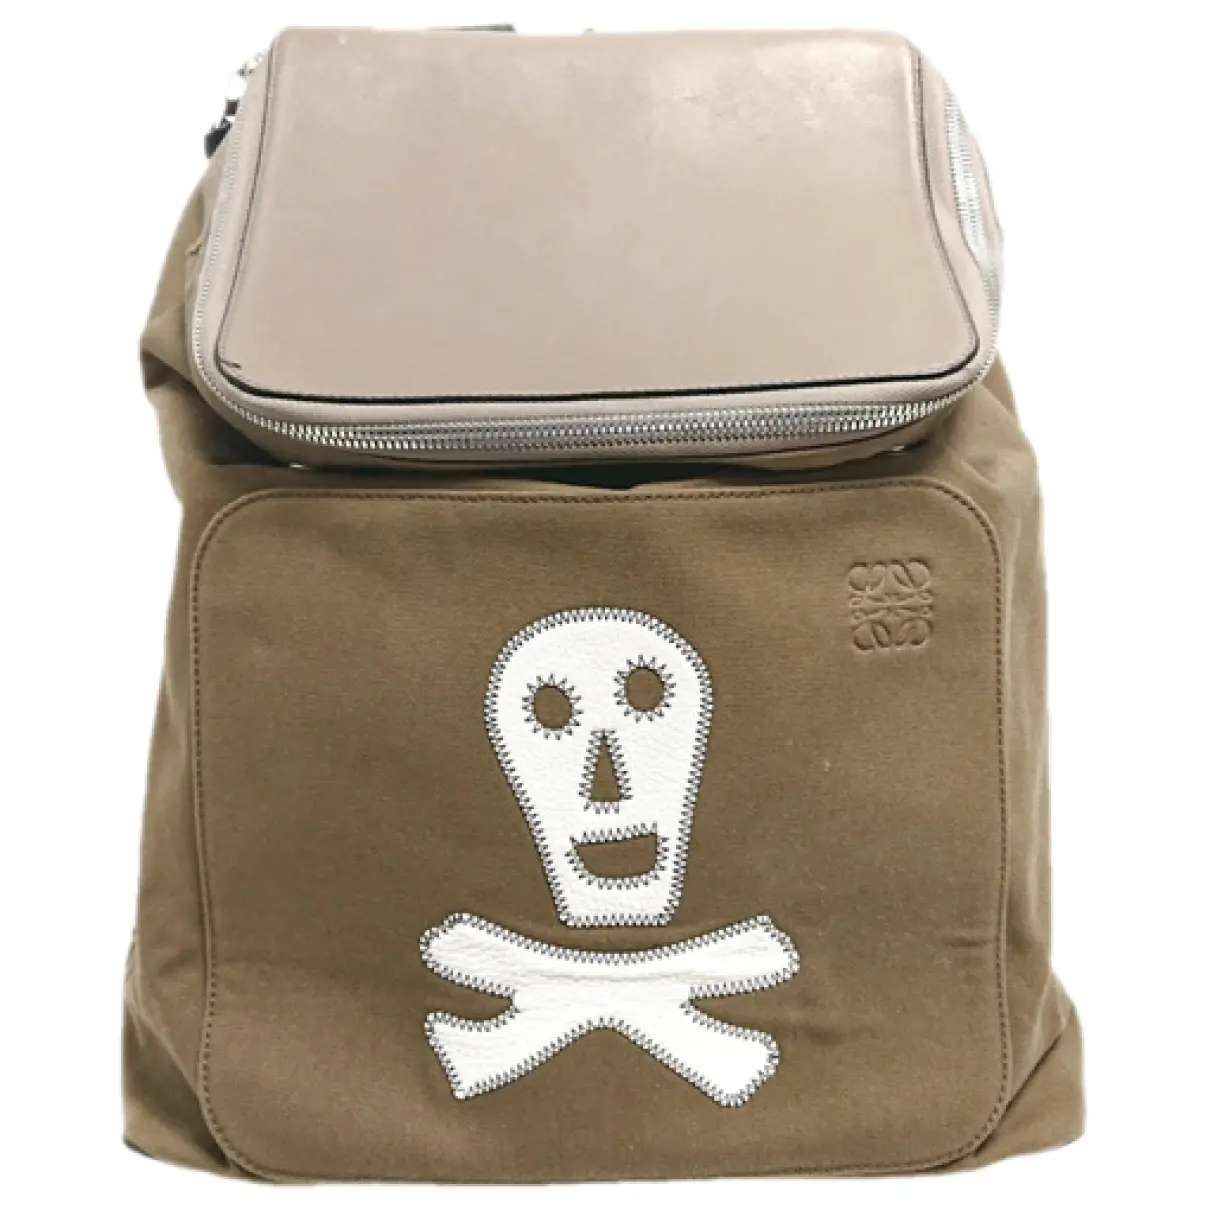 Goya backpack